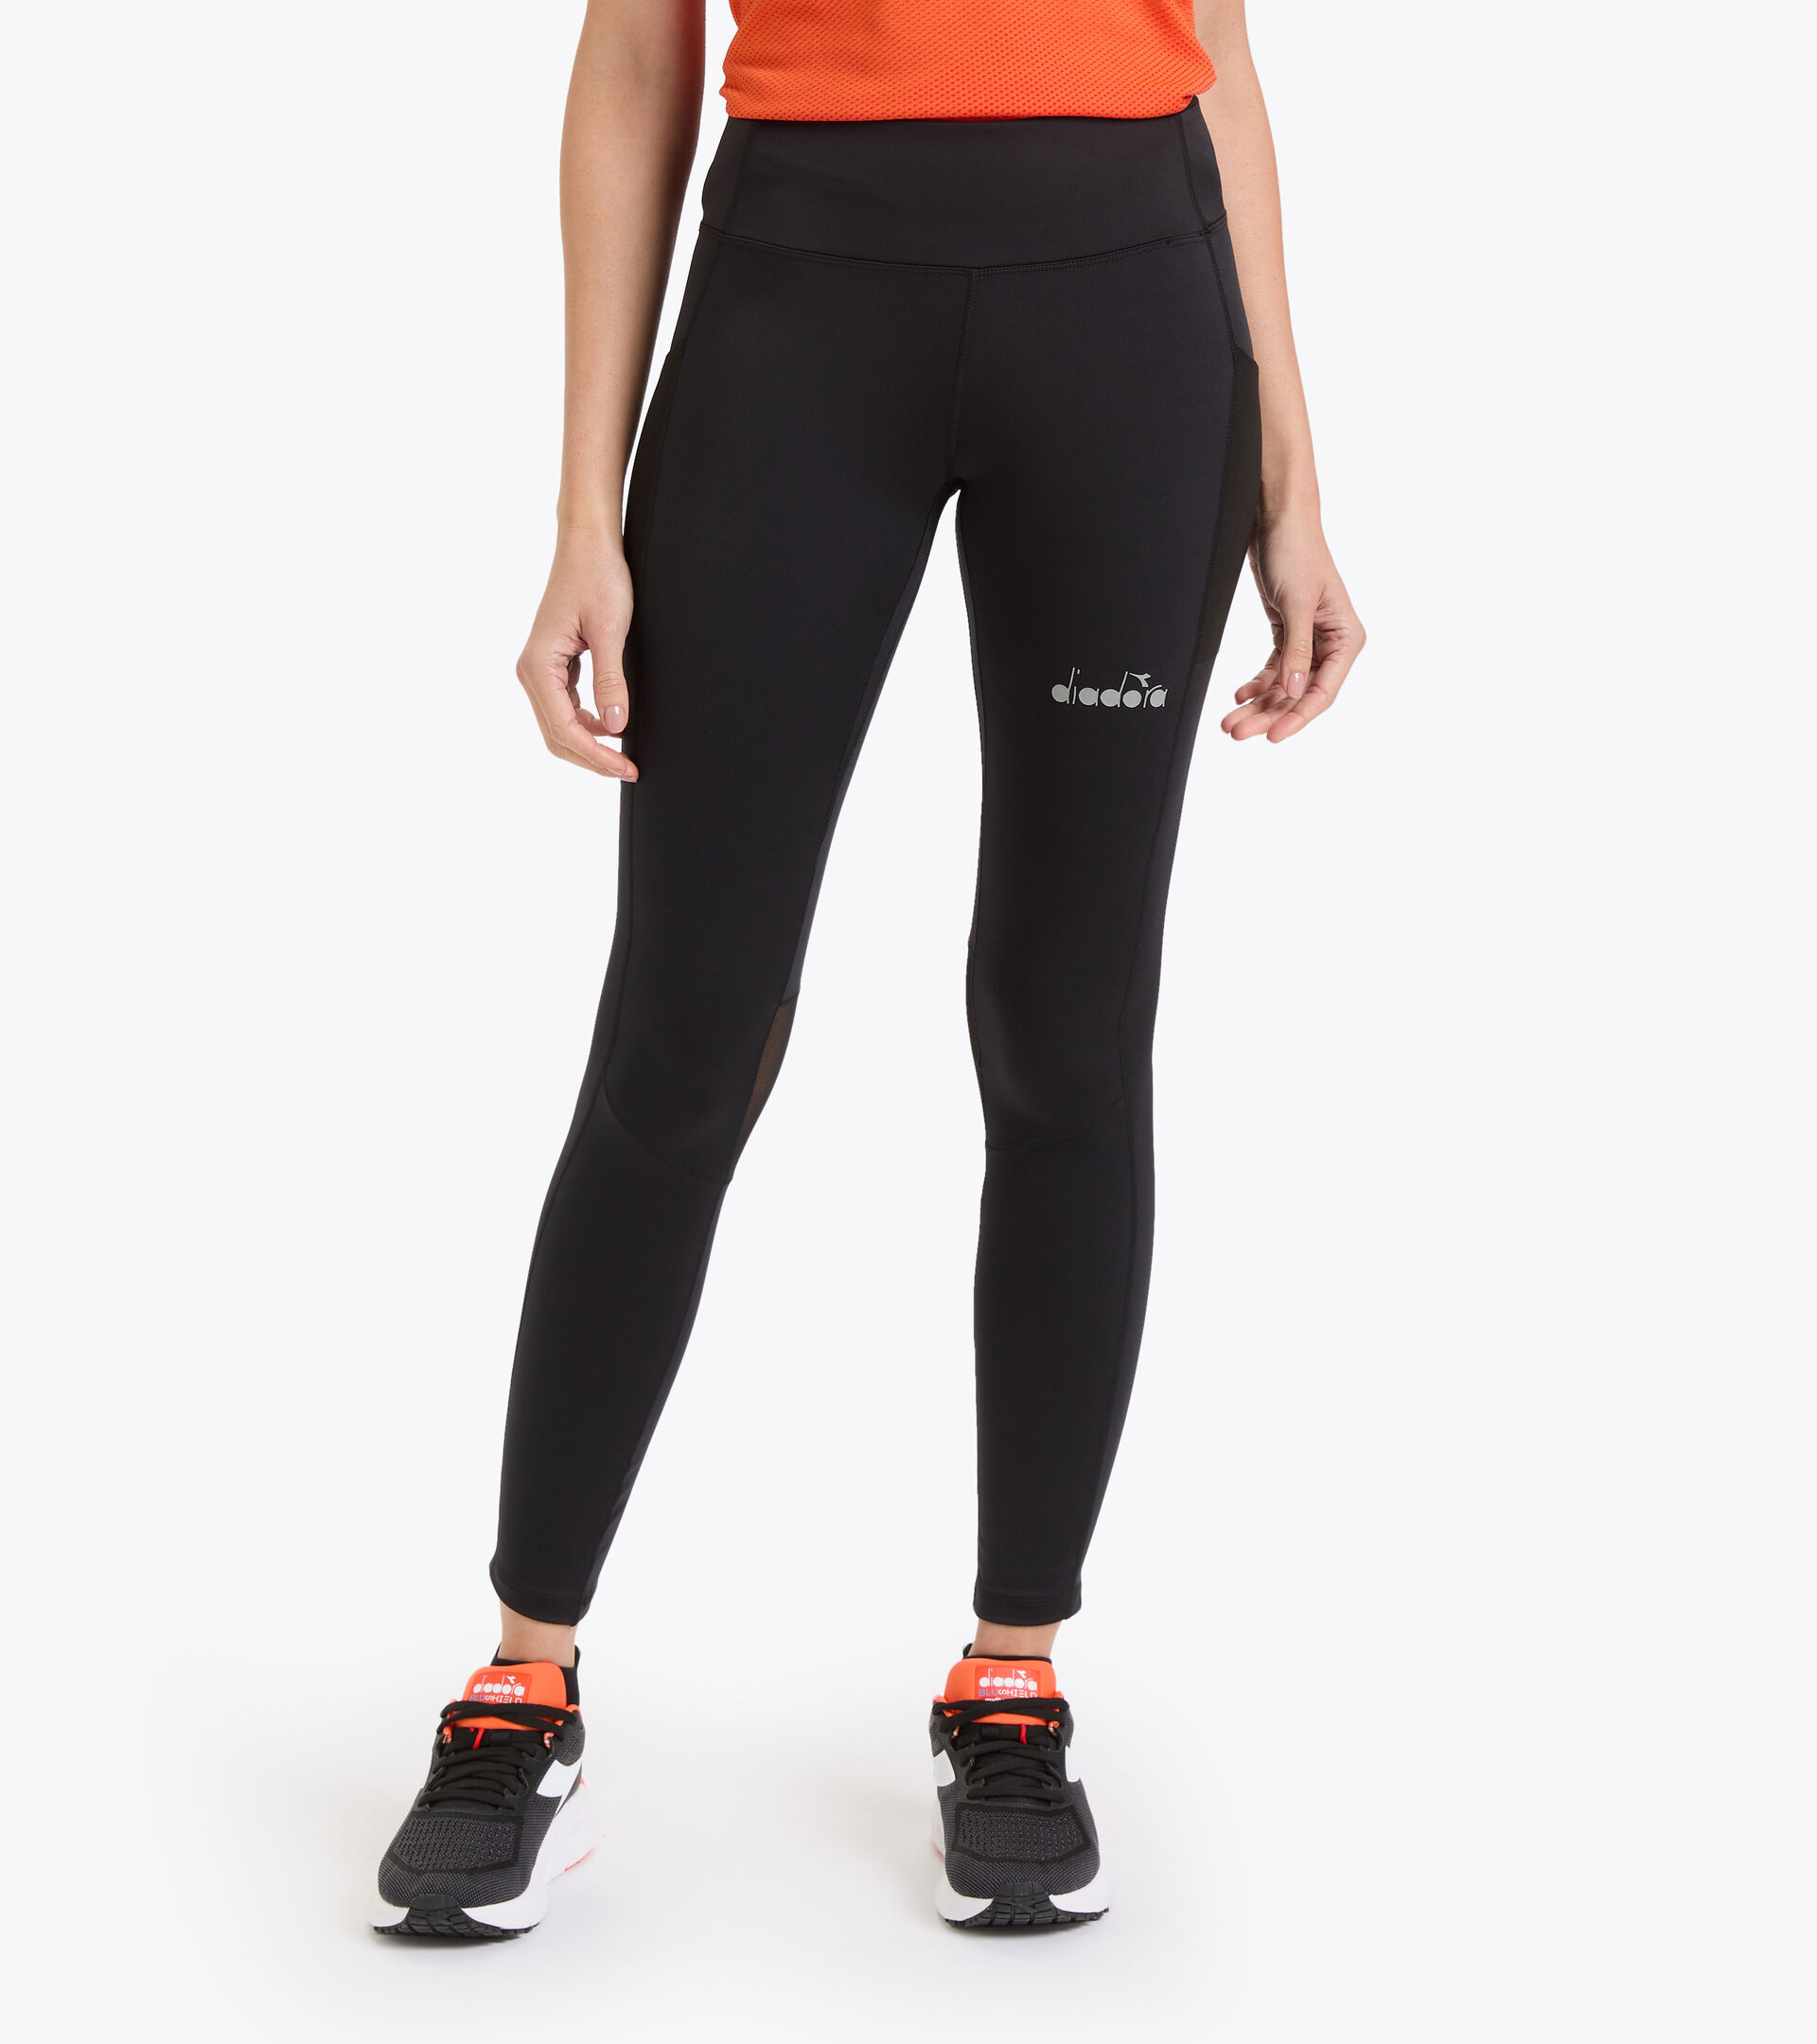 verwijzen Dosering Voorvoegsel L. HW RUNNING TIGHTS Sports leggings - Women - Diadora Online Store US